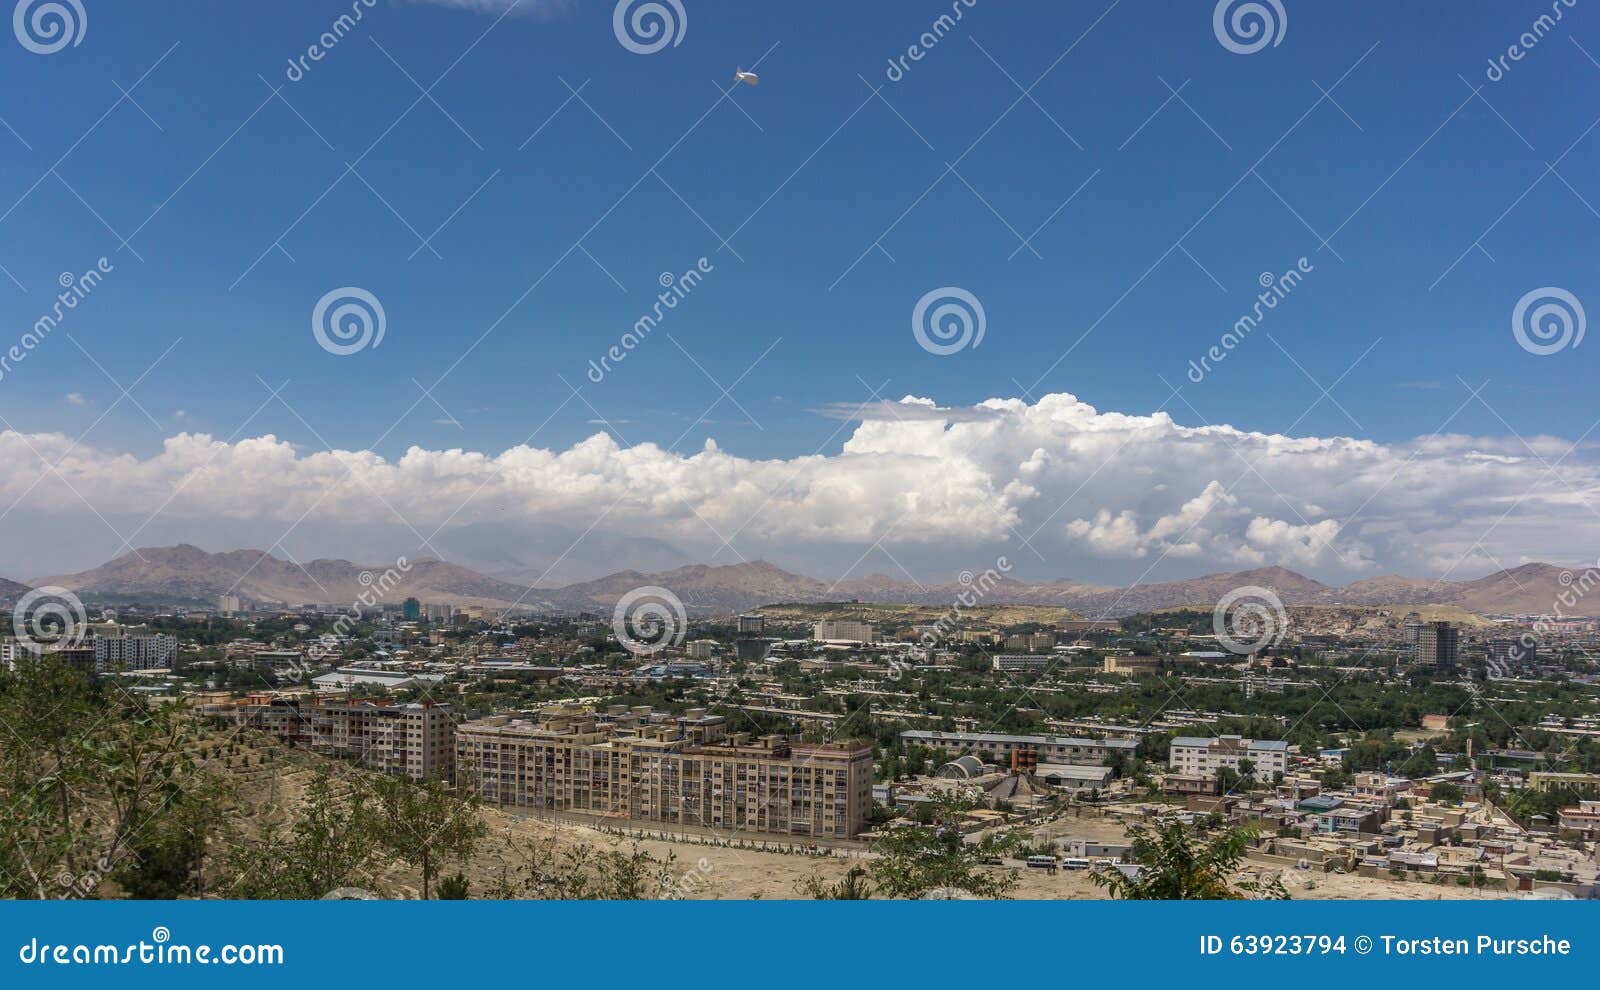 Кабул (столица Афганистана) — Афганистан — Планета Земля